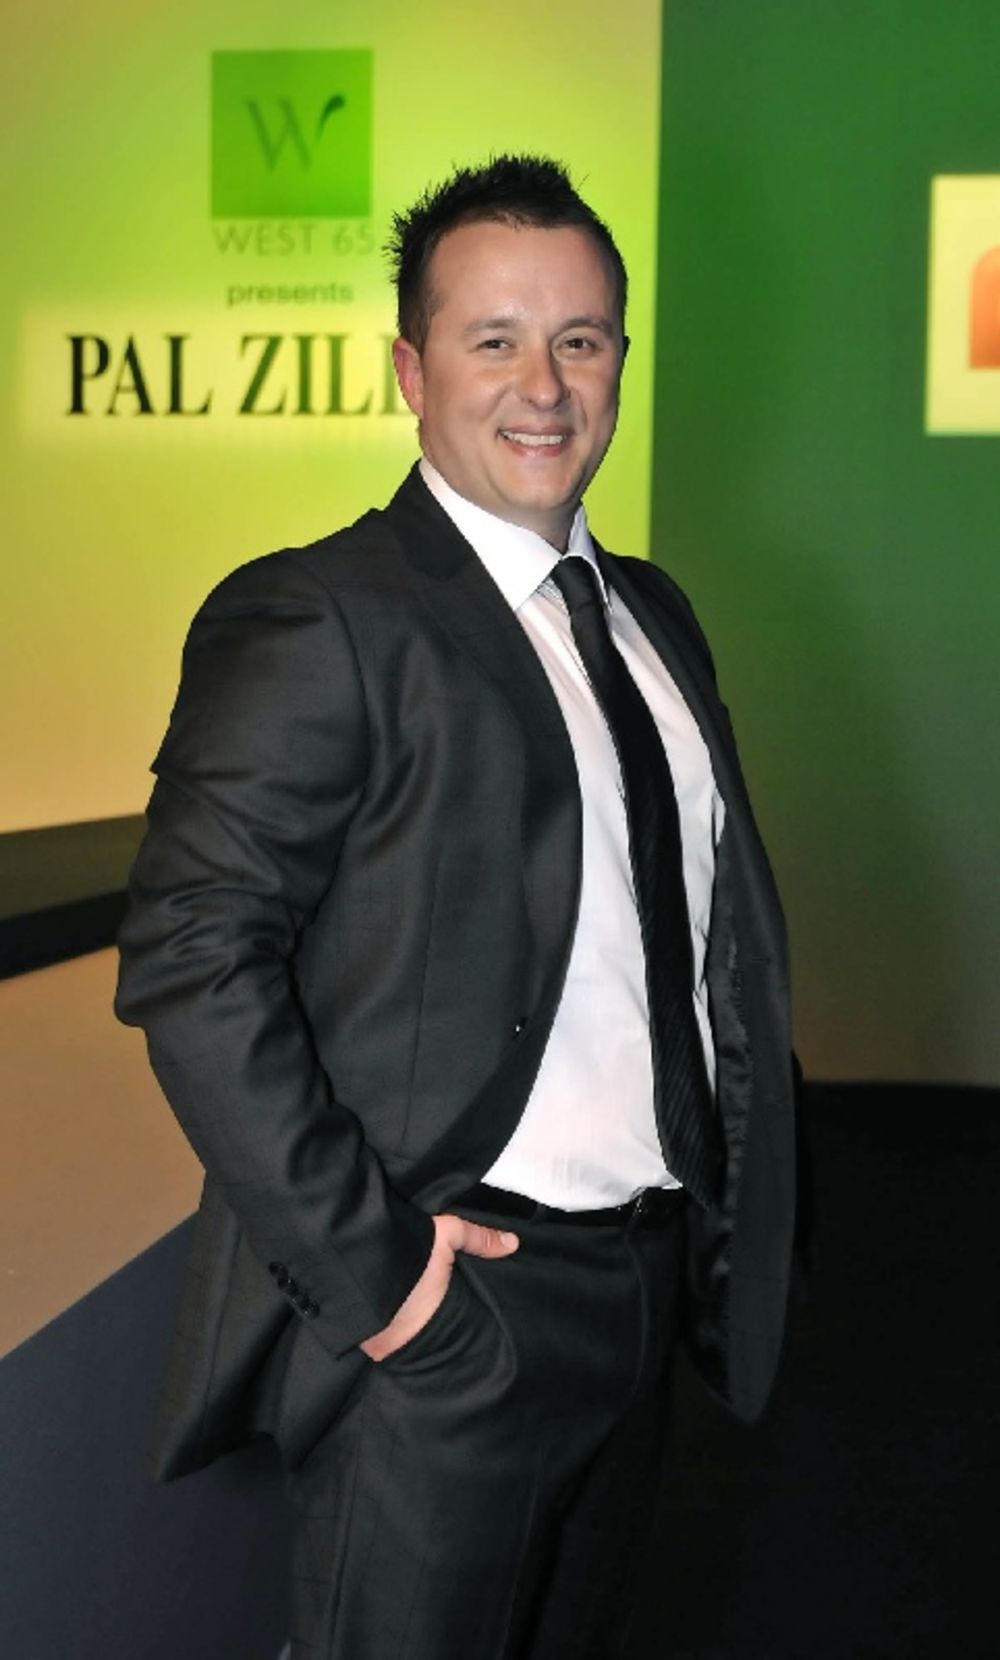 Sinoć je u Belexpocentru održana dvadeset deveta revija Pal Zileri, prikazana je kolekcija proleće/leto 2011, a specijalni gost večeri bio je popularni voditelj Ivan Ivanović